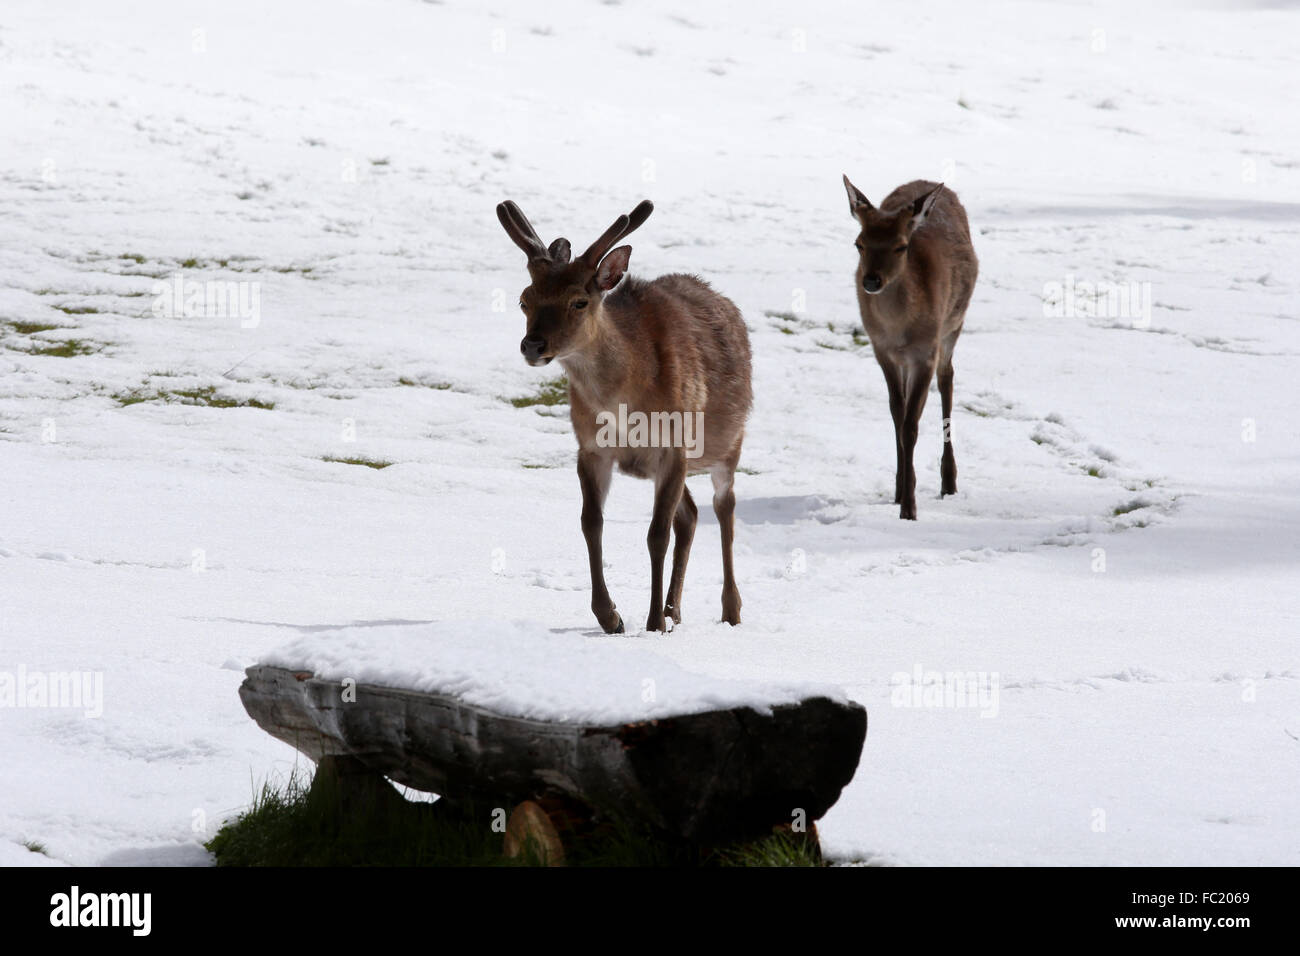 Merlet wildlife park. Red deer (Cervus elaphus). Stock Photo